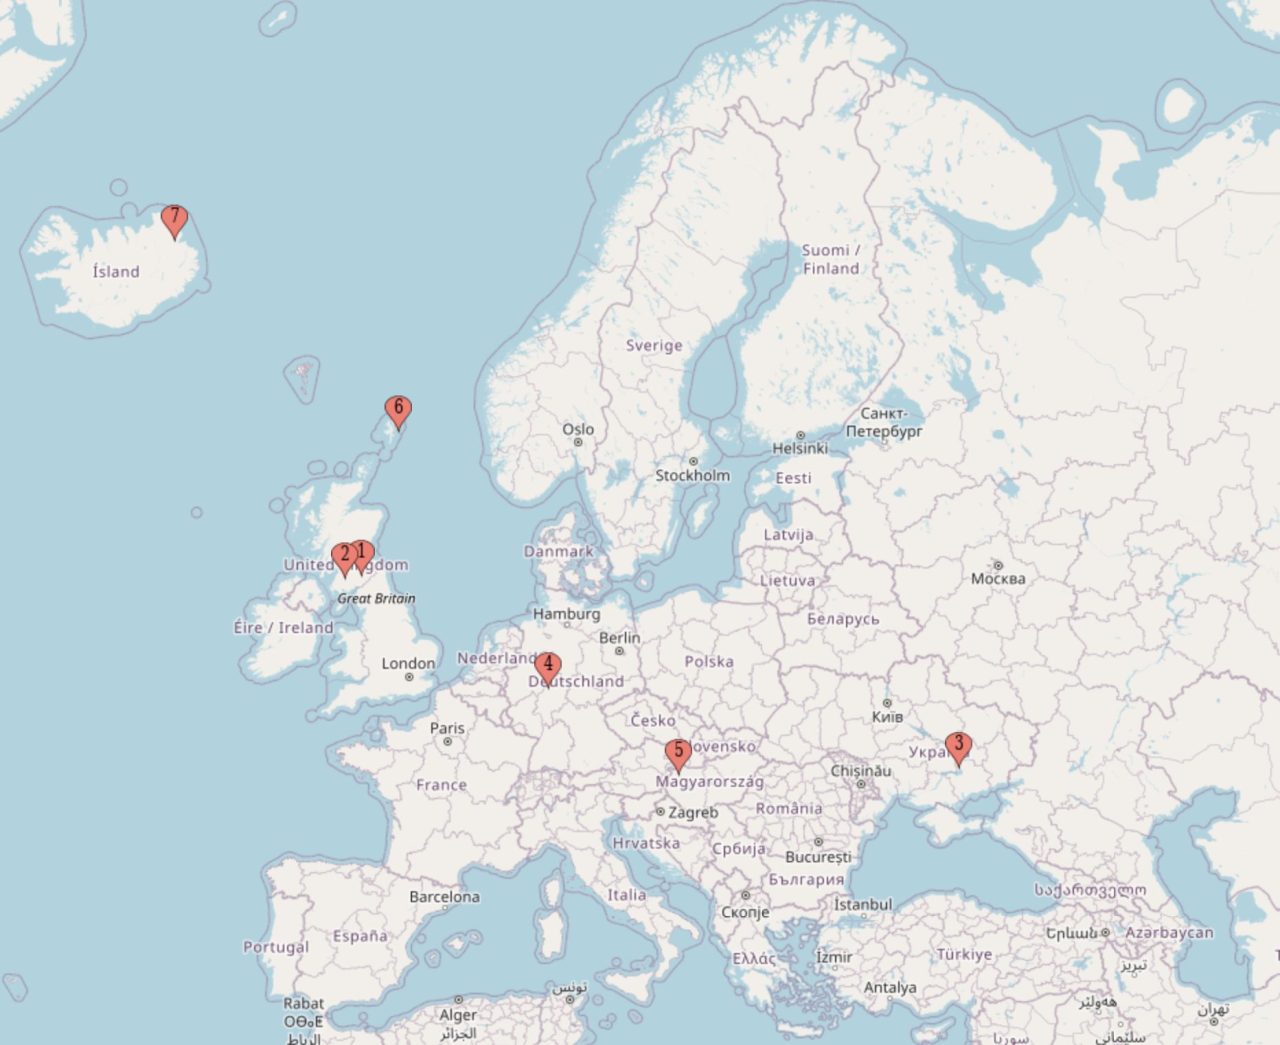 Skyrora's Geographic Footprint in Europe